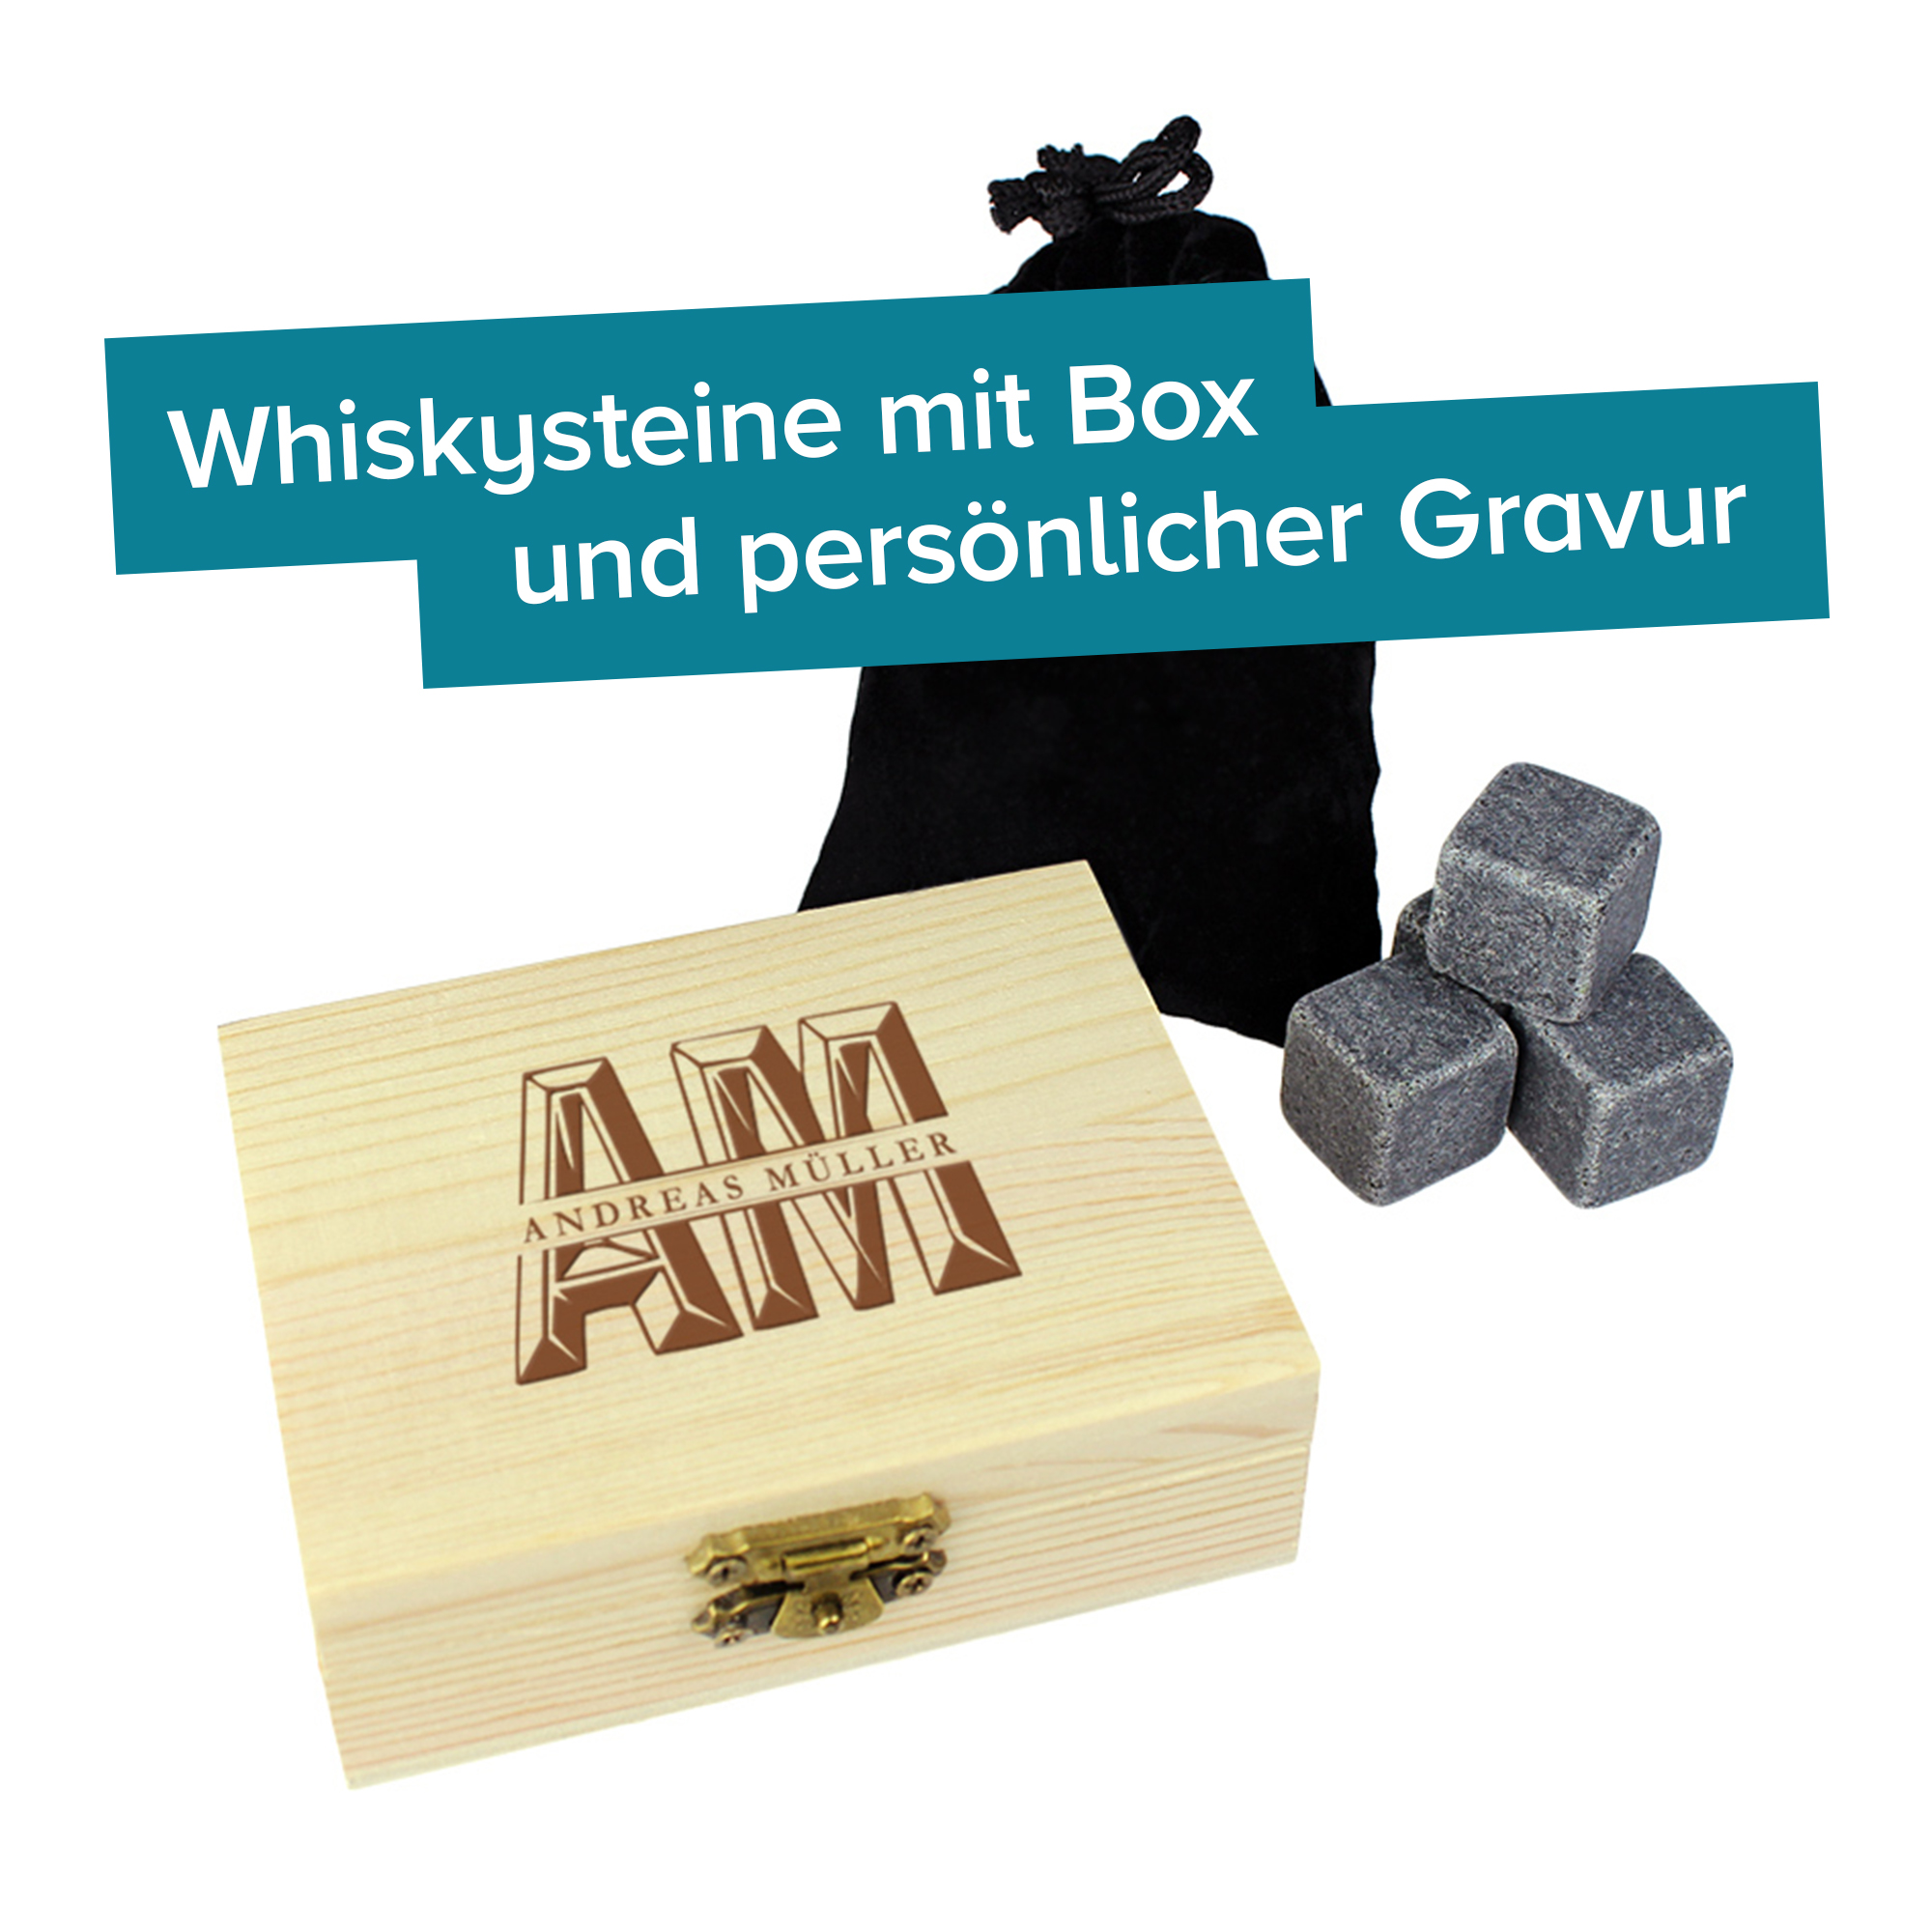 Whisky Steine in Holzkiste mit Gravur - XL Initialen 4161 - 1